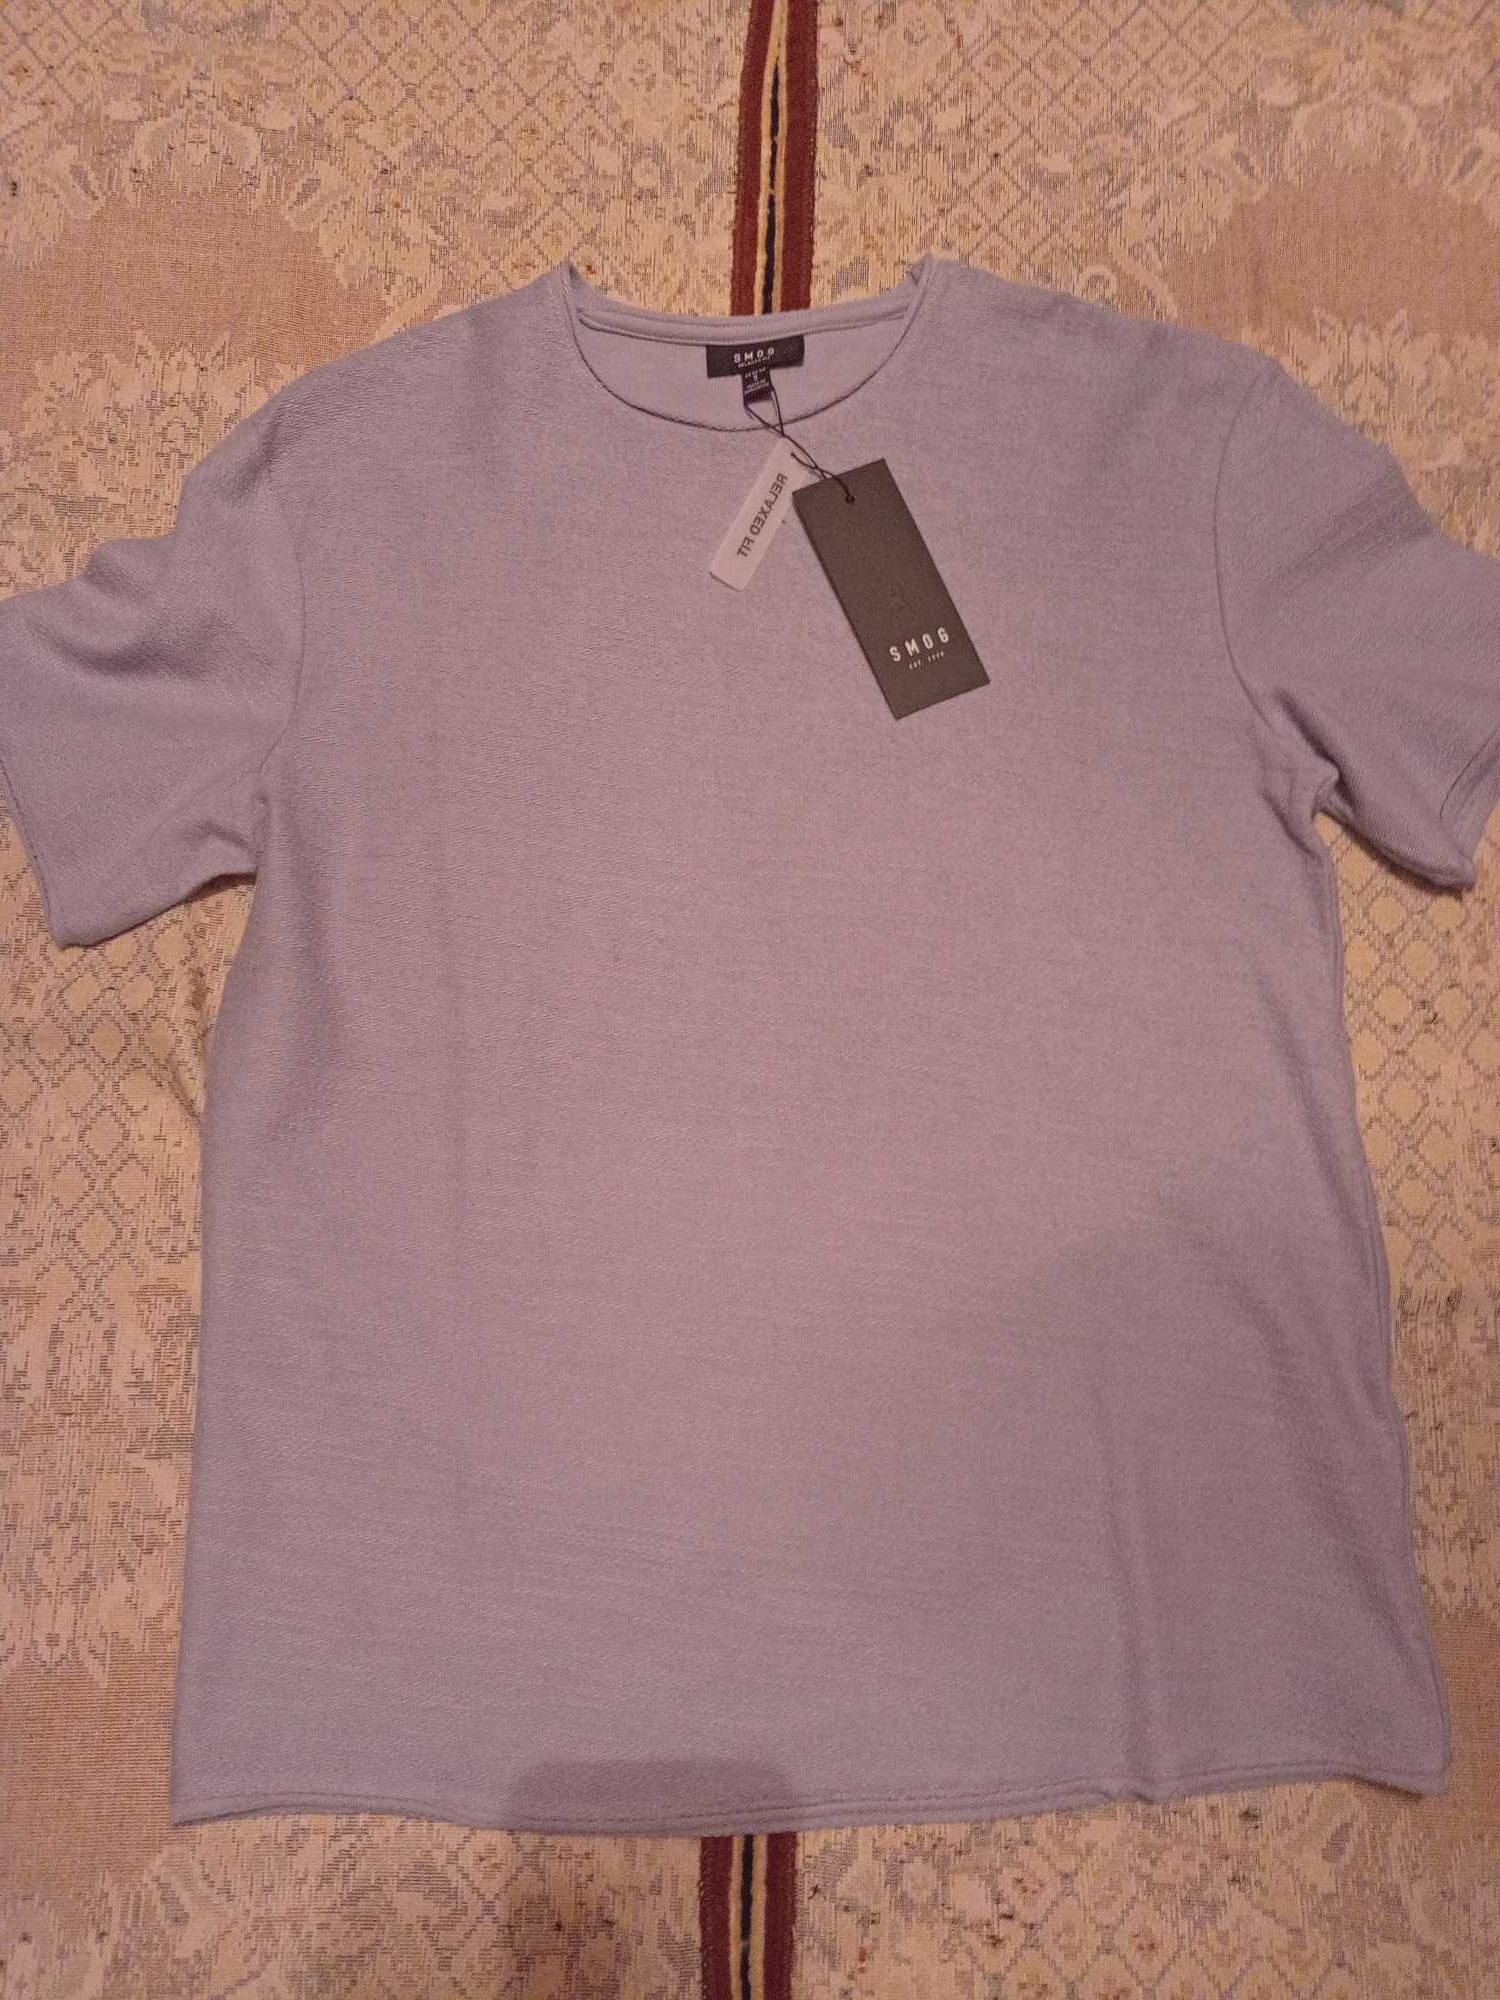 футболка мужская с длинным рукавом /реглан р. S (5 штук)